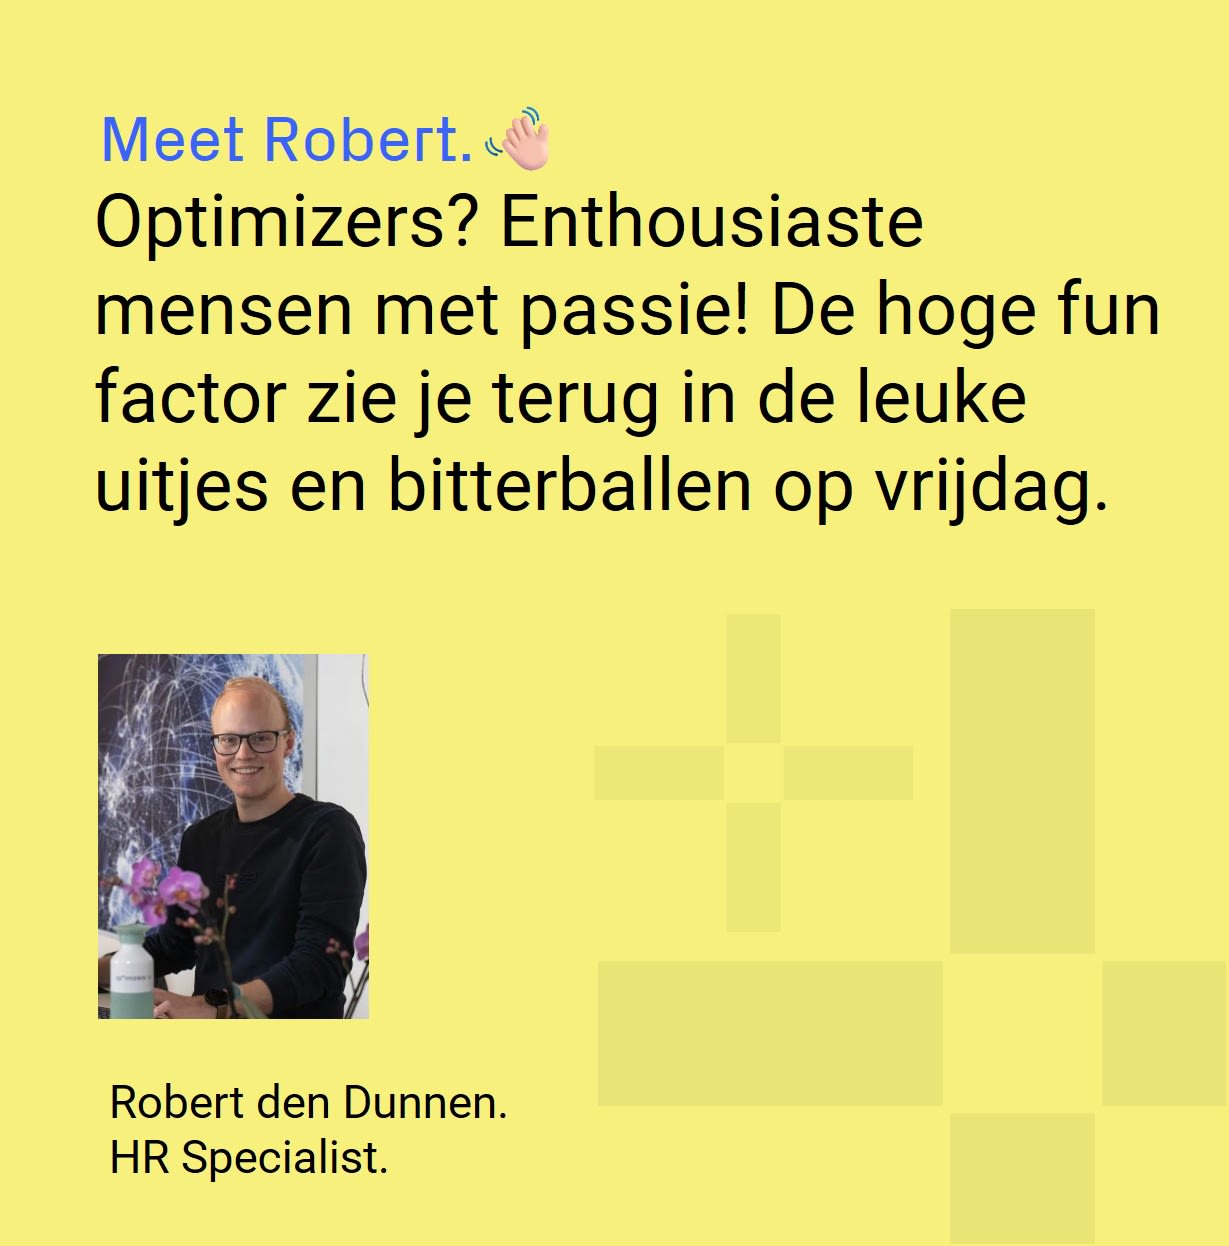 Robert den Dunnen - HR Specialist verteld over werken bij Optimizers. Optimizers? Enthousiaste mensen met passie! De hoge fun factor zie je terug in de leuke uitjes en bitterballen op vrijdag.